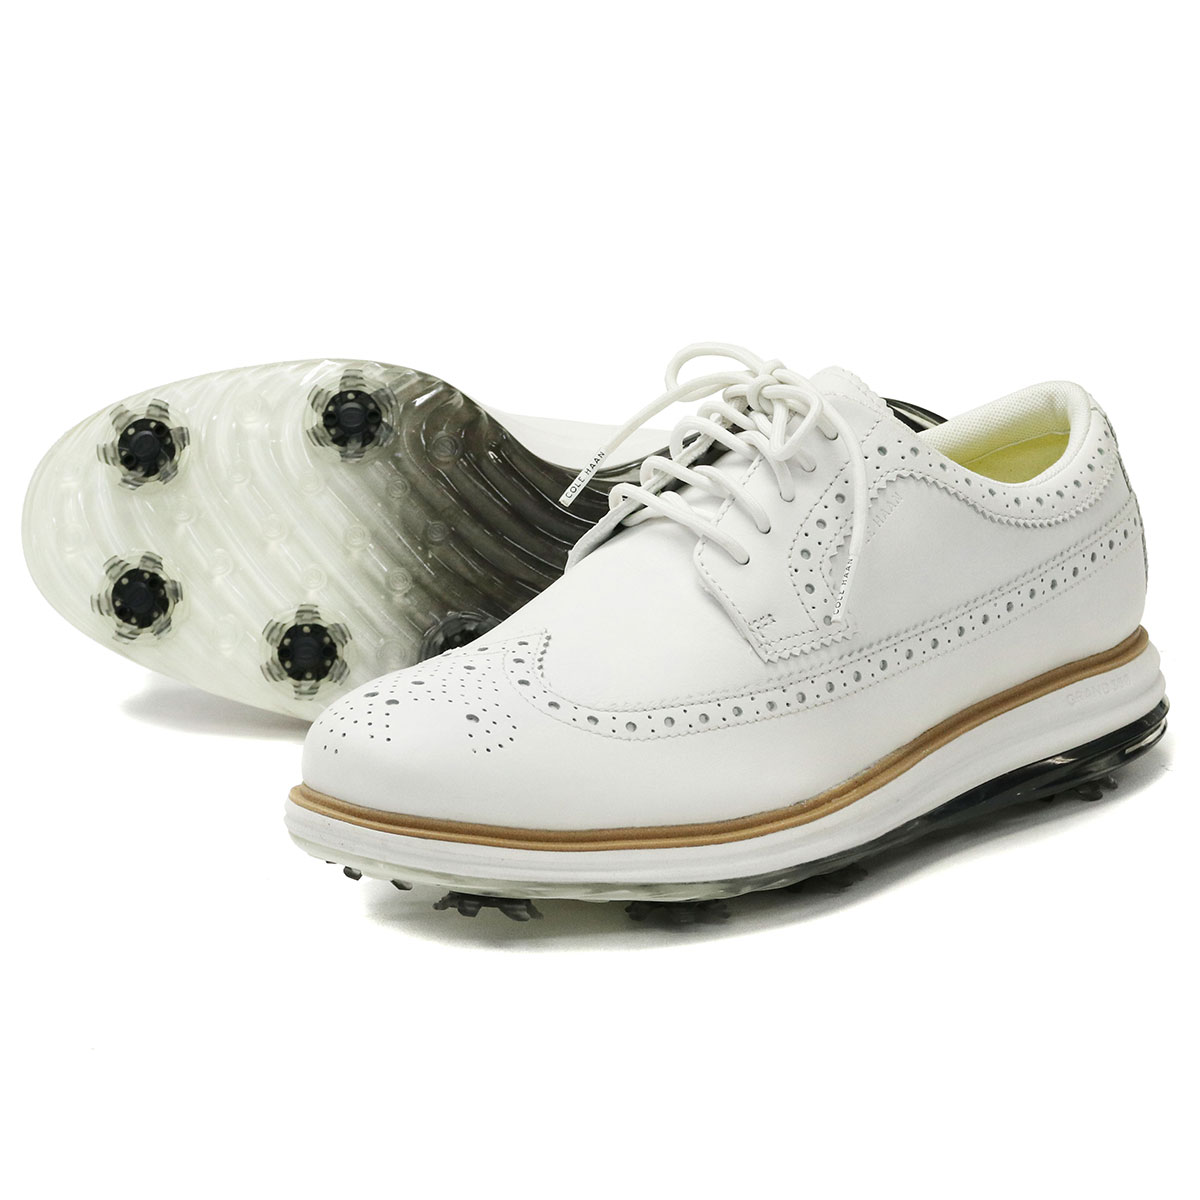 コールハーン シューズ COLE HAAN 靴 オリジナルグランド ORIGINALGRAND Tour Golf WP ゴルフシューズ 革 レザー  メンズ C36153 C36154